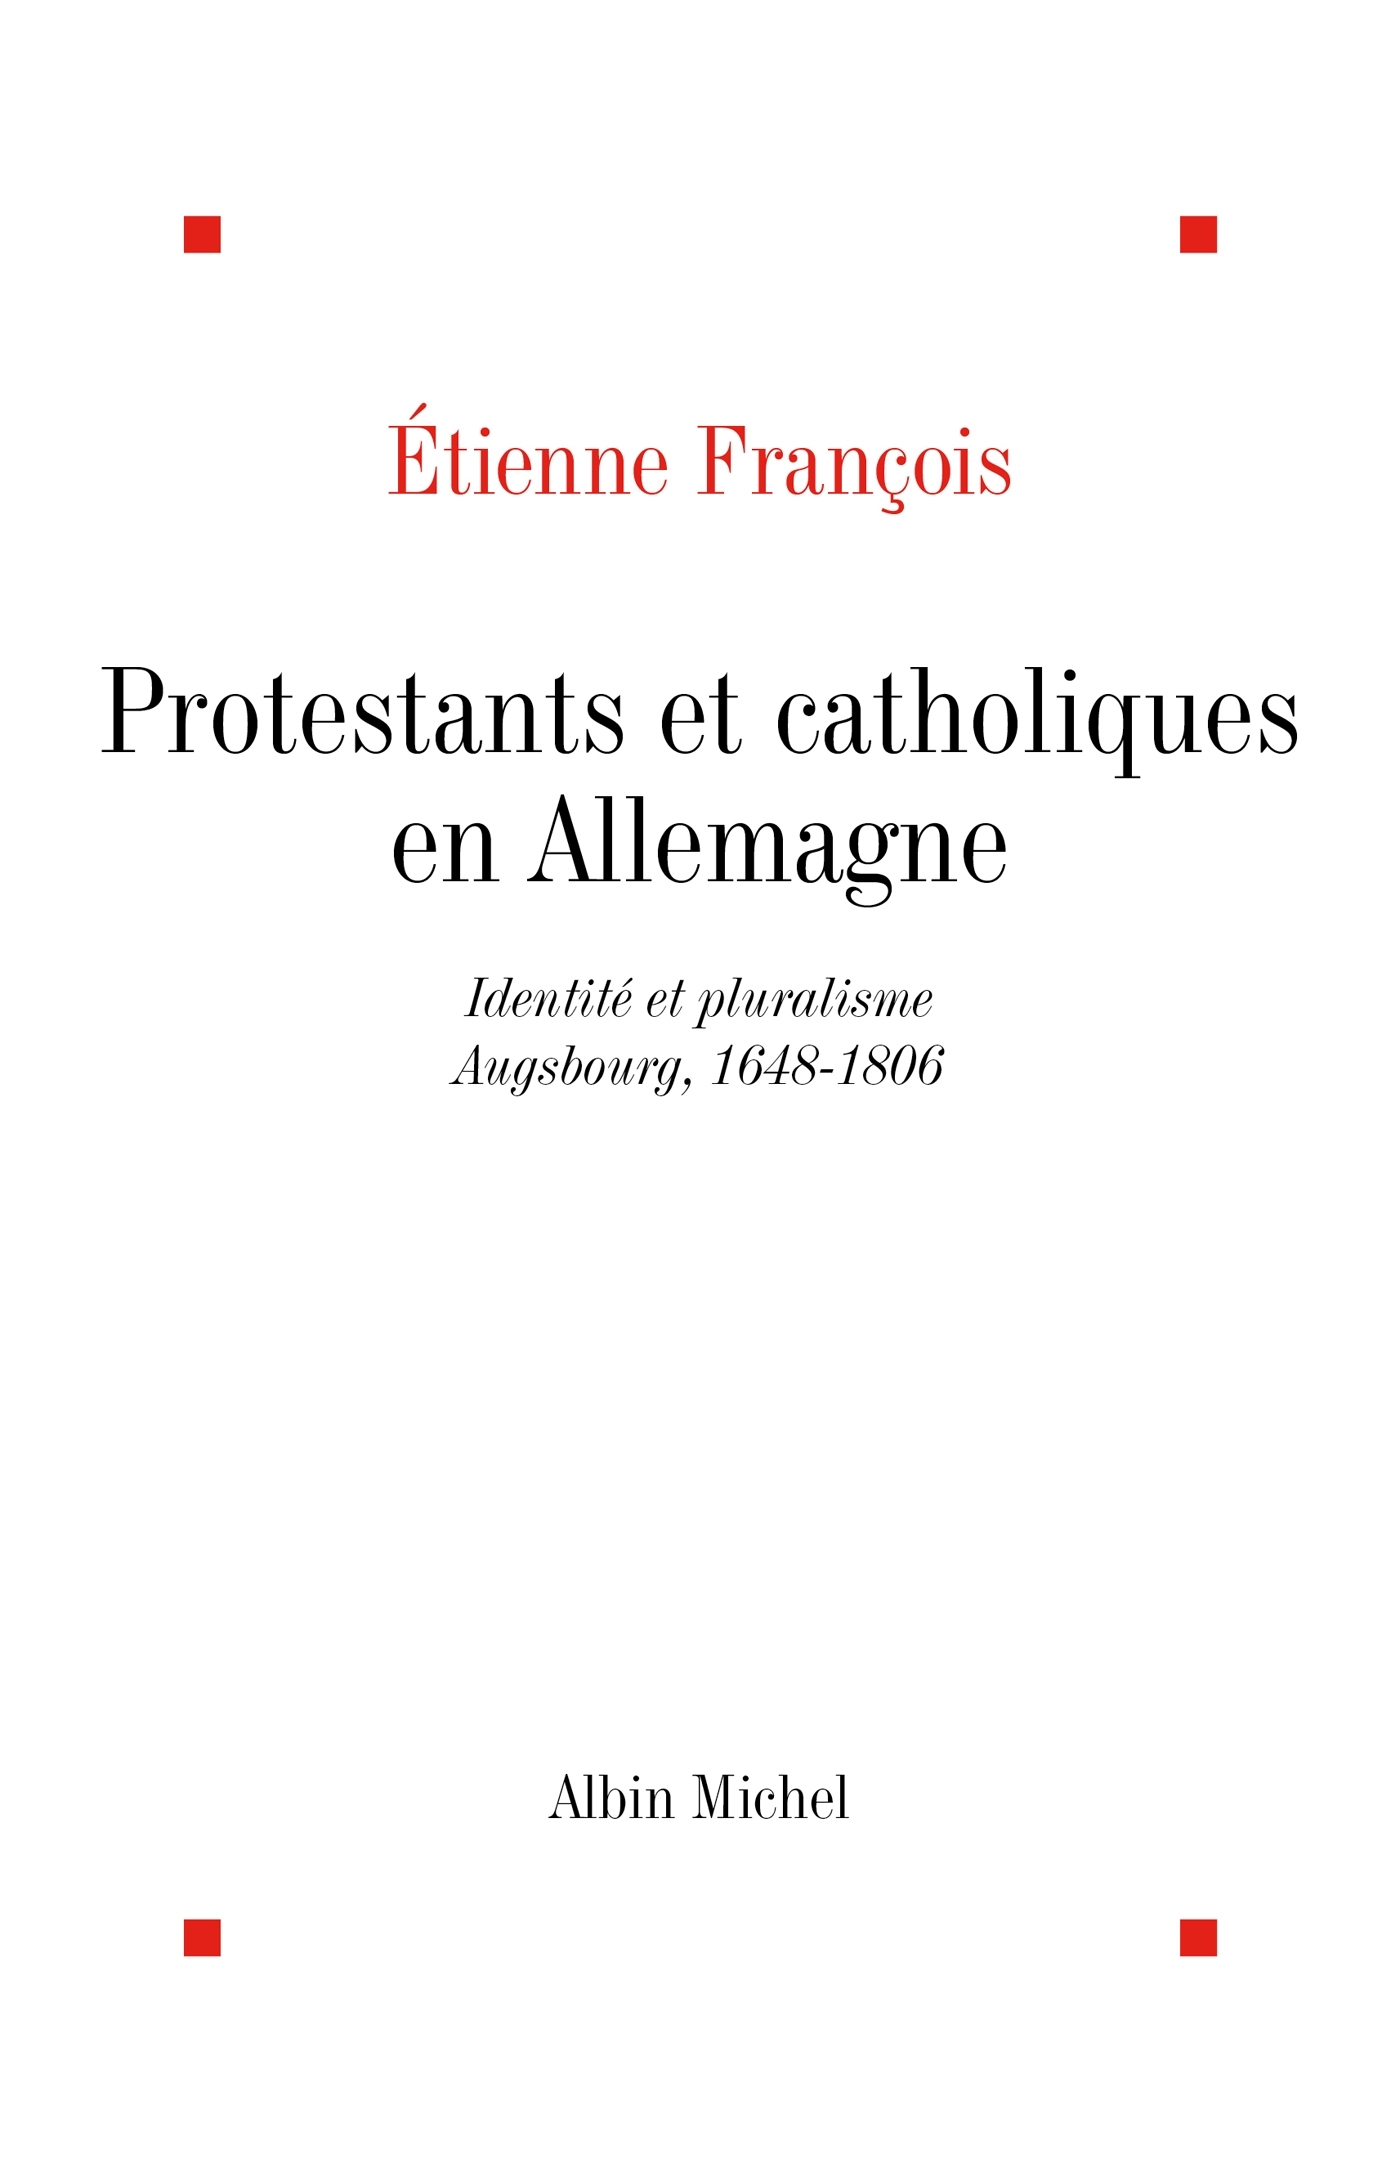 Protestants et catholiques en Allemagne, Identités et pluralisme, Ausbourg, 1648-1806 (9782226060938-front-cover)